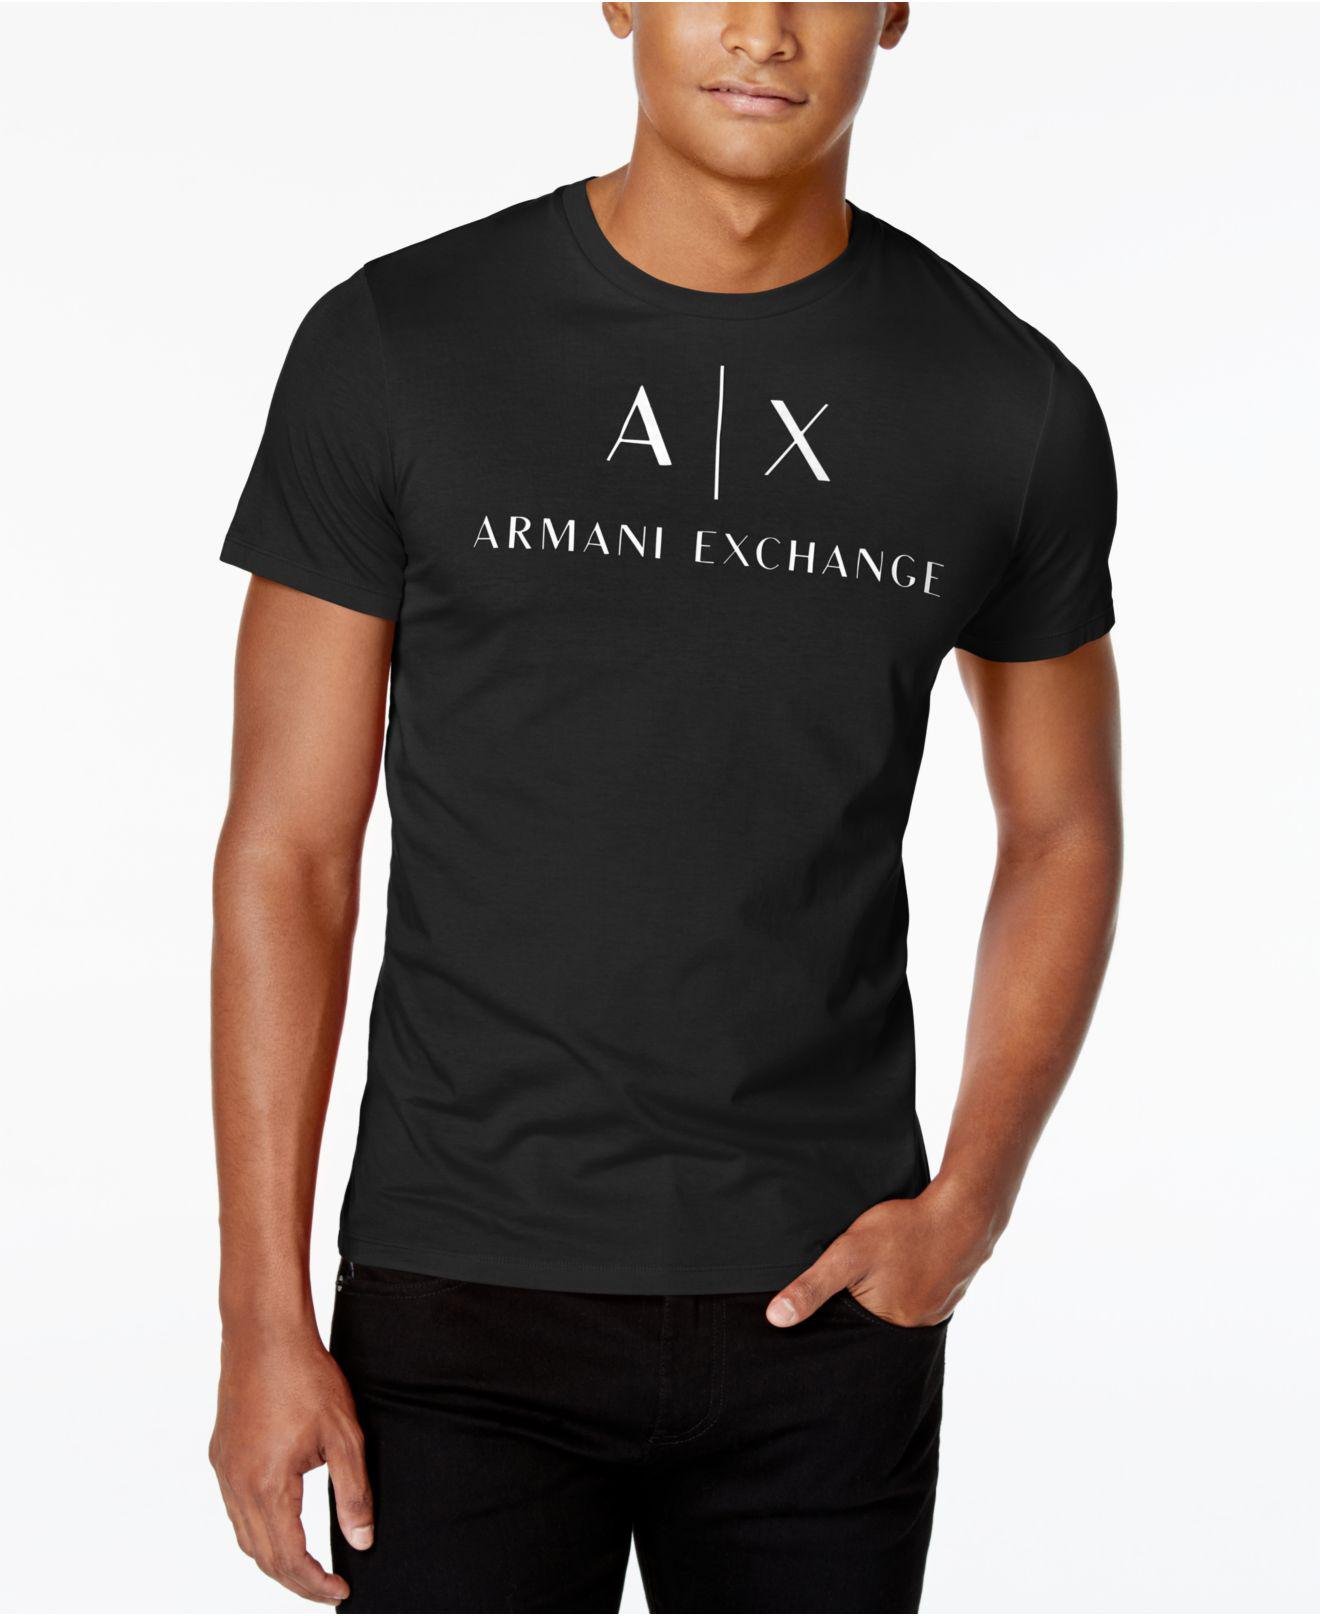 armani exchange men shirt